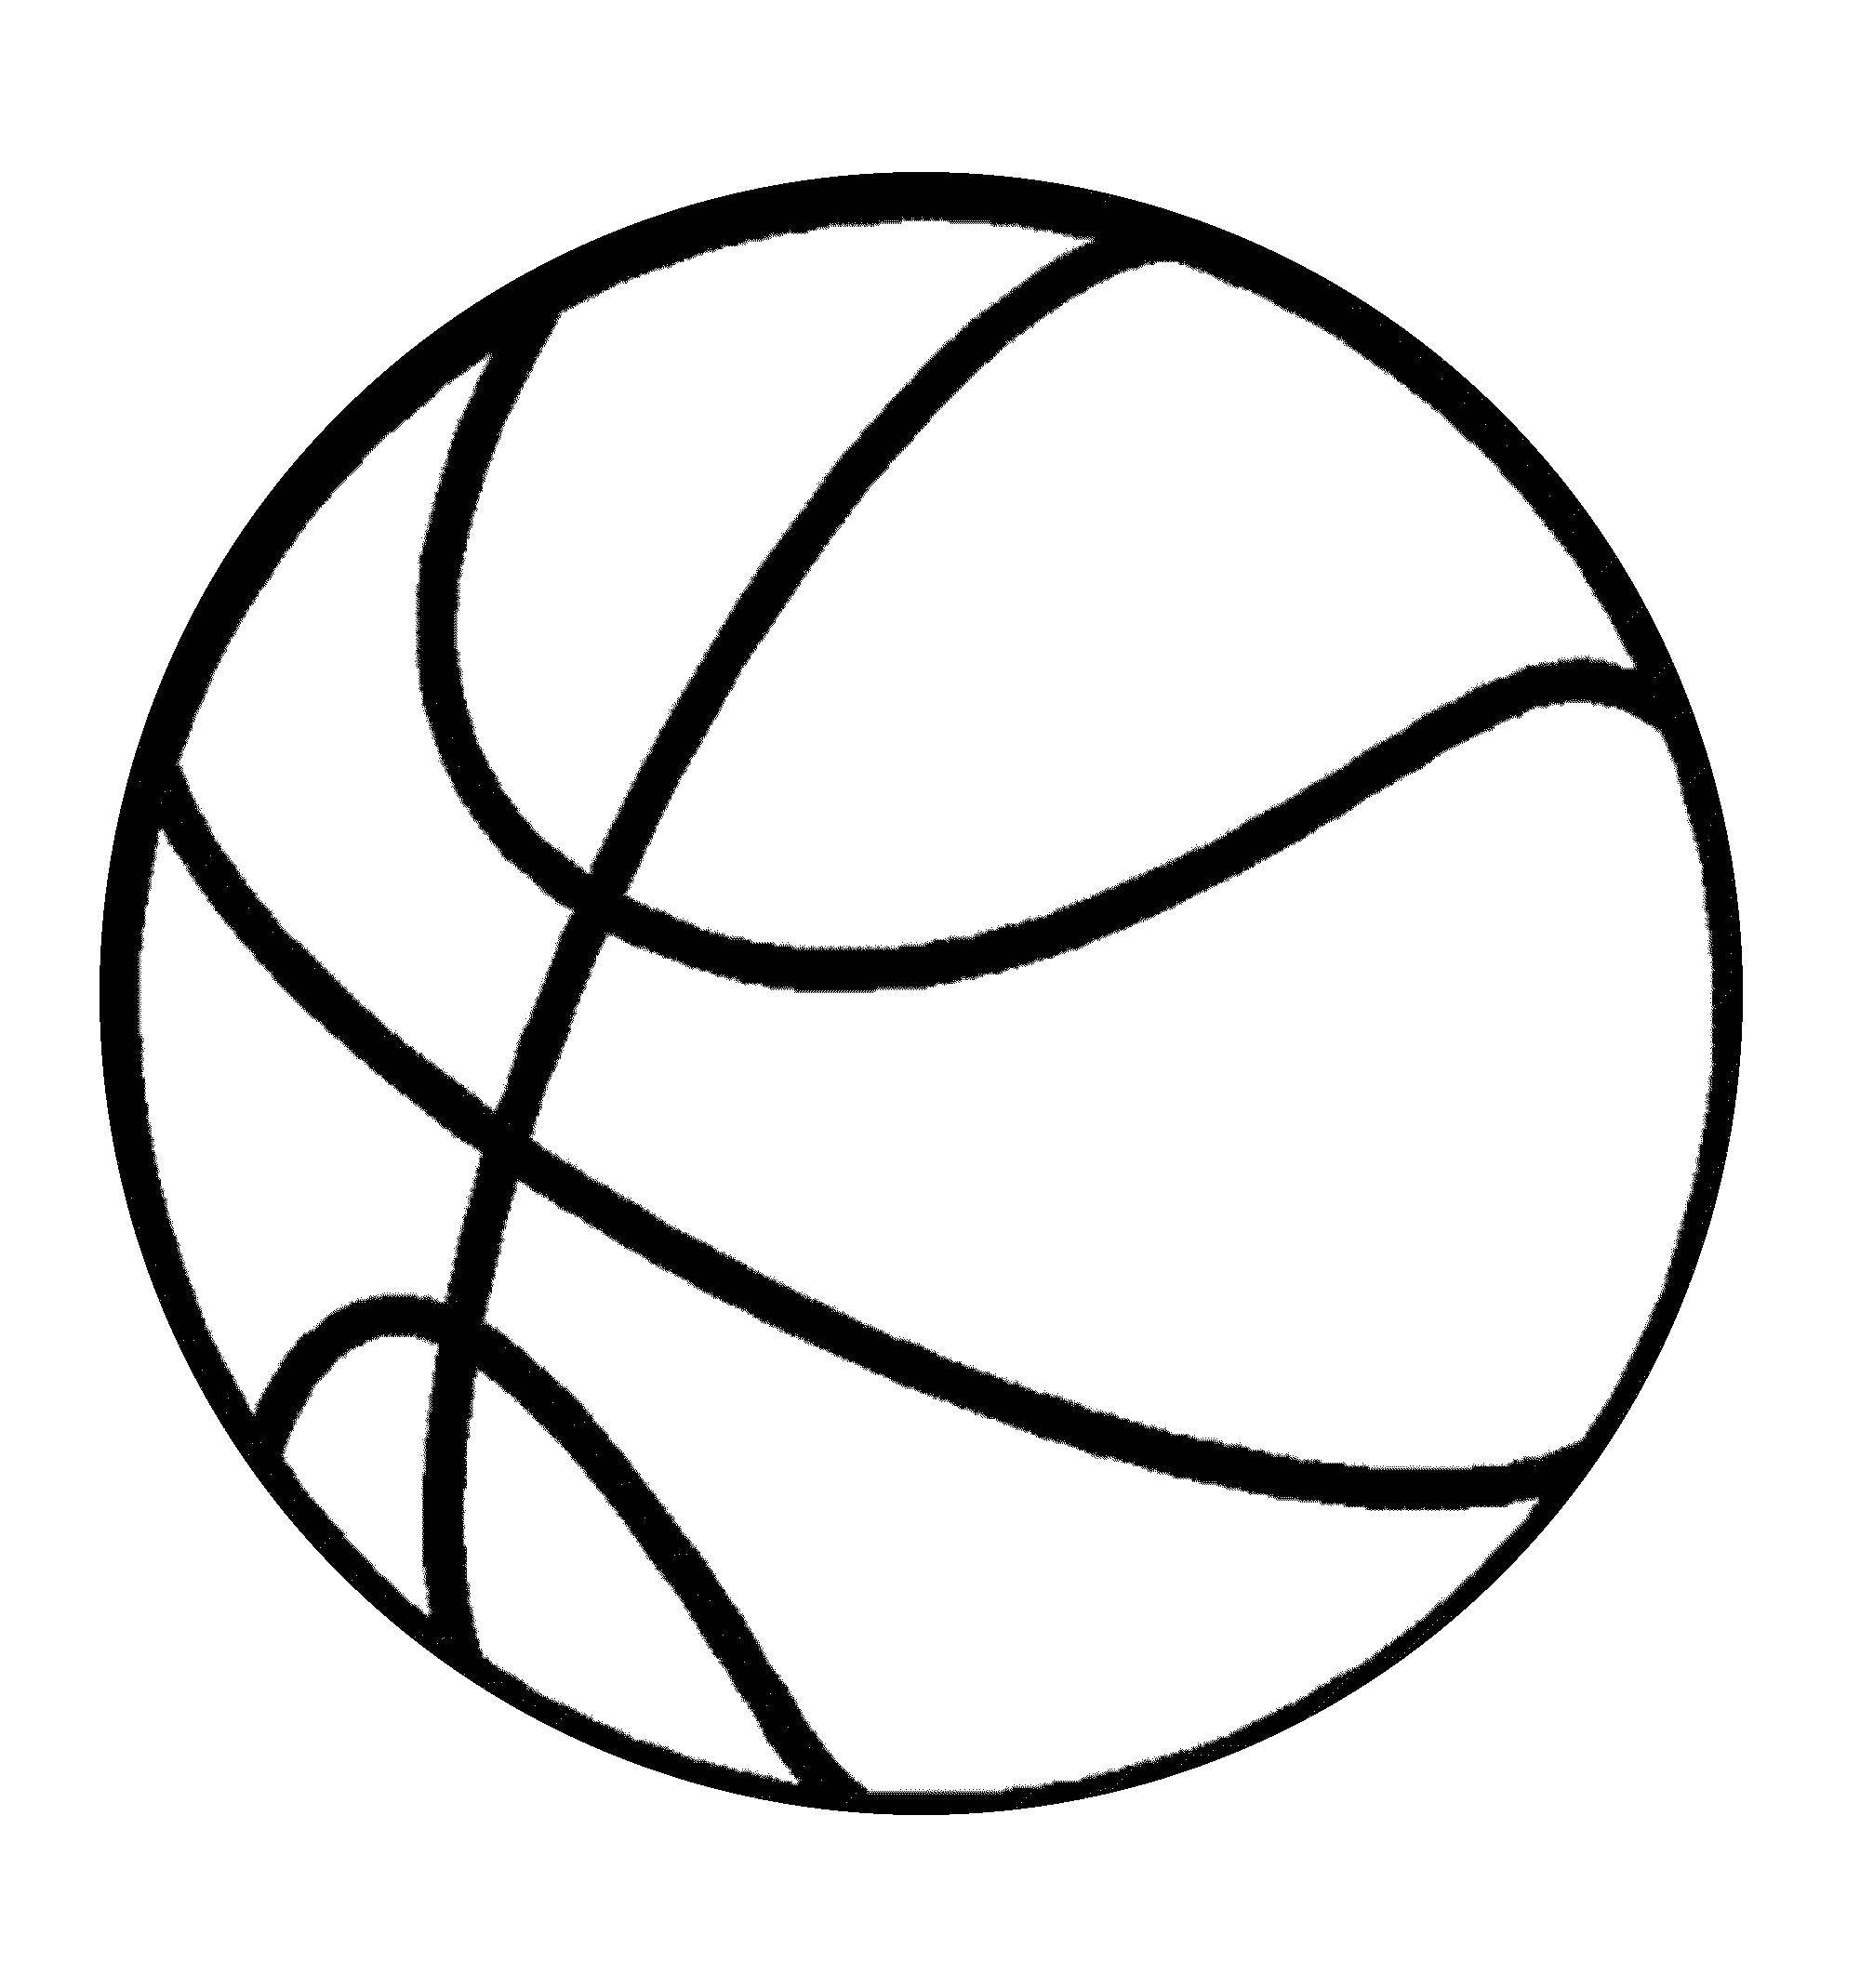 Coloring Ball, basketball. Category basketball. Tags:  Sports, basketball, ball, play.